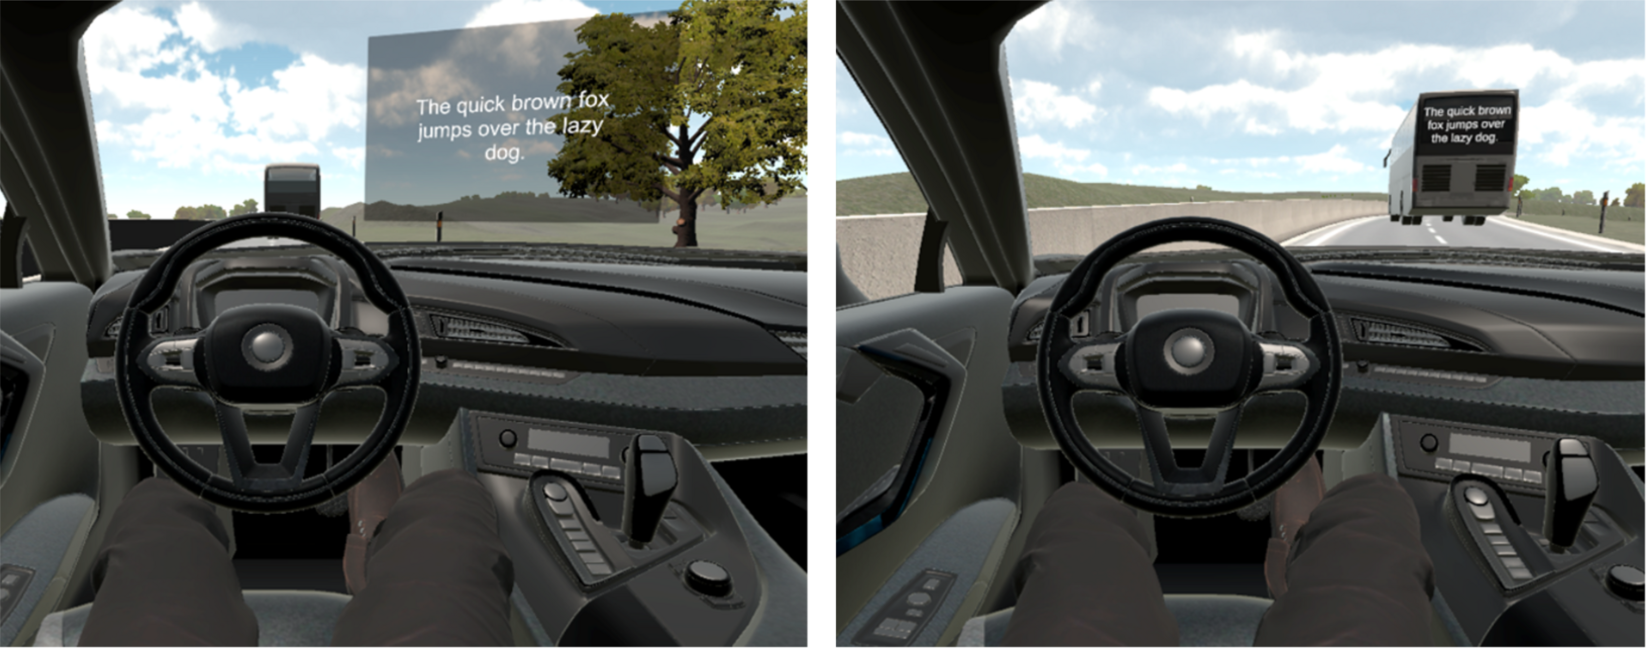 Zwei Szenarien einer Textanzeige mit Hilfe von Augmented Reality: Auf der Windschutzscheibe oder virtuell auf der Rückseite eines LKWs